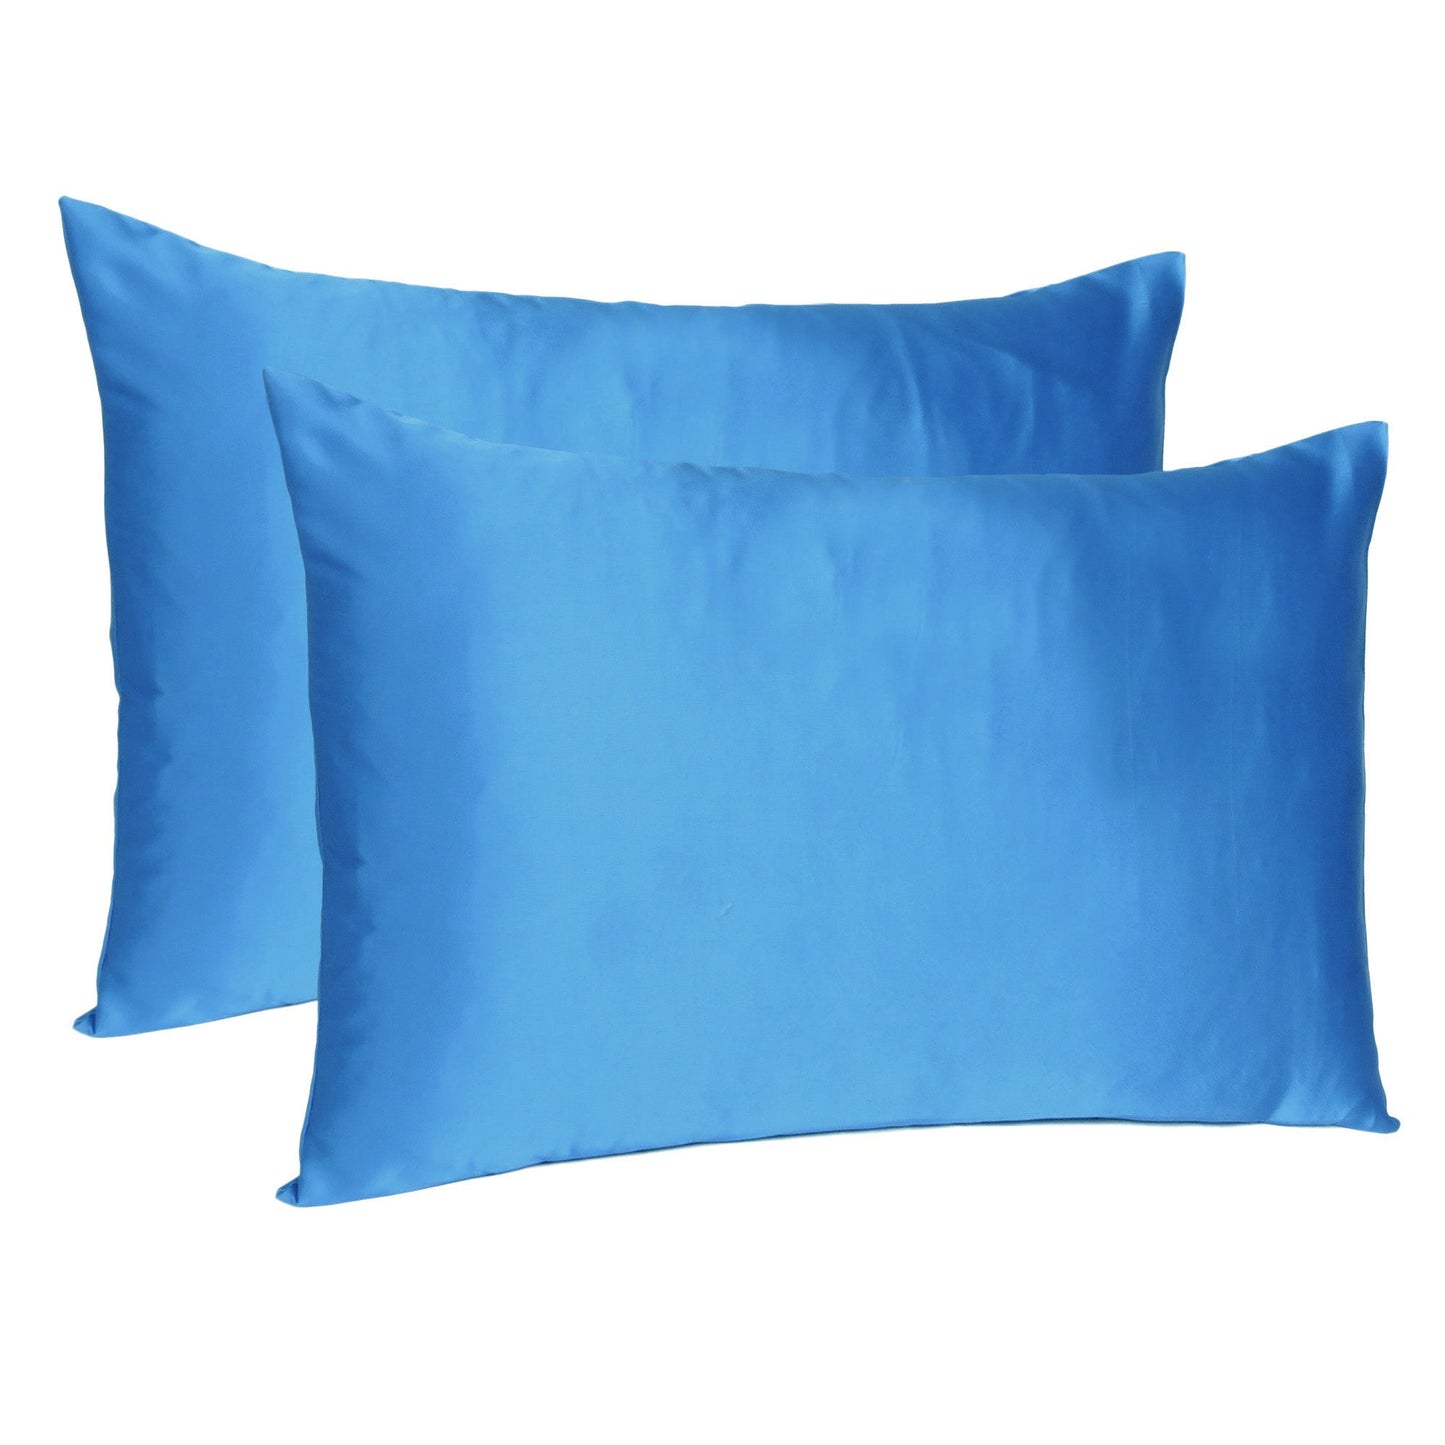 Luxury Soft Plain Satin Silk Pillowcases in Set of 2 - Methylene Blue